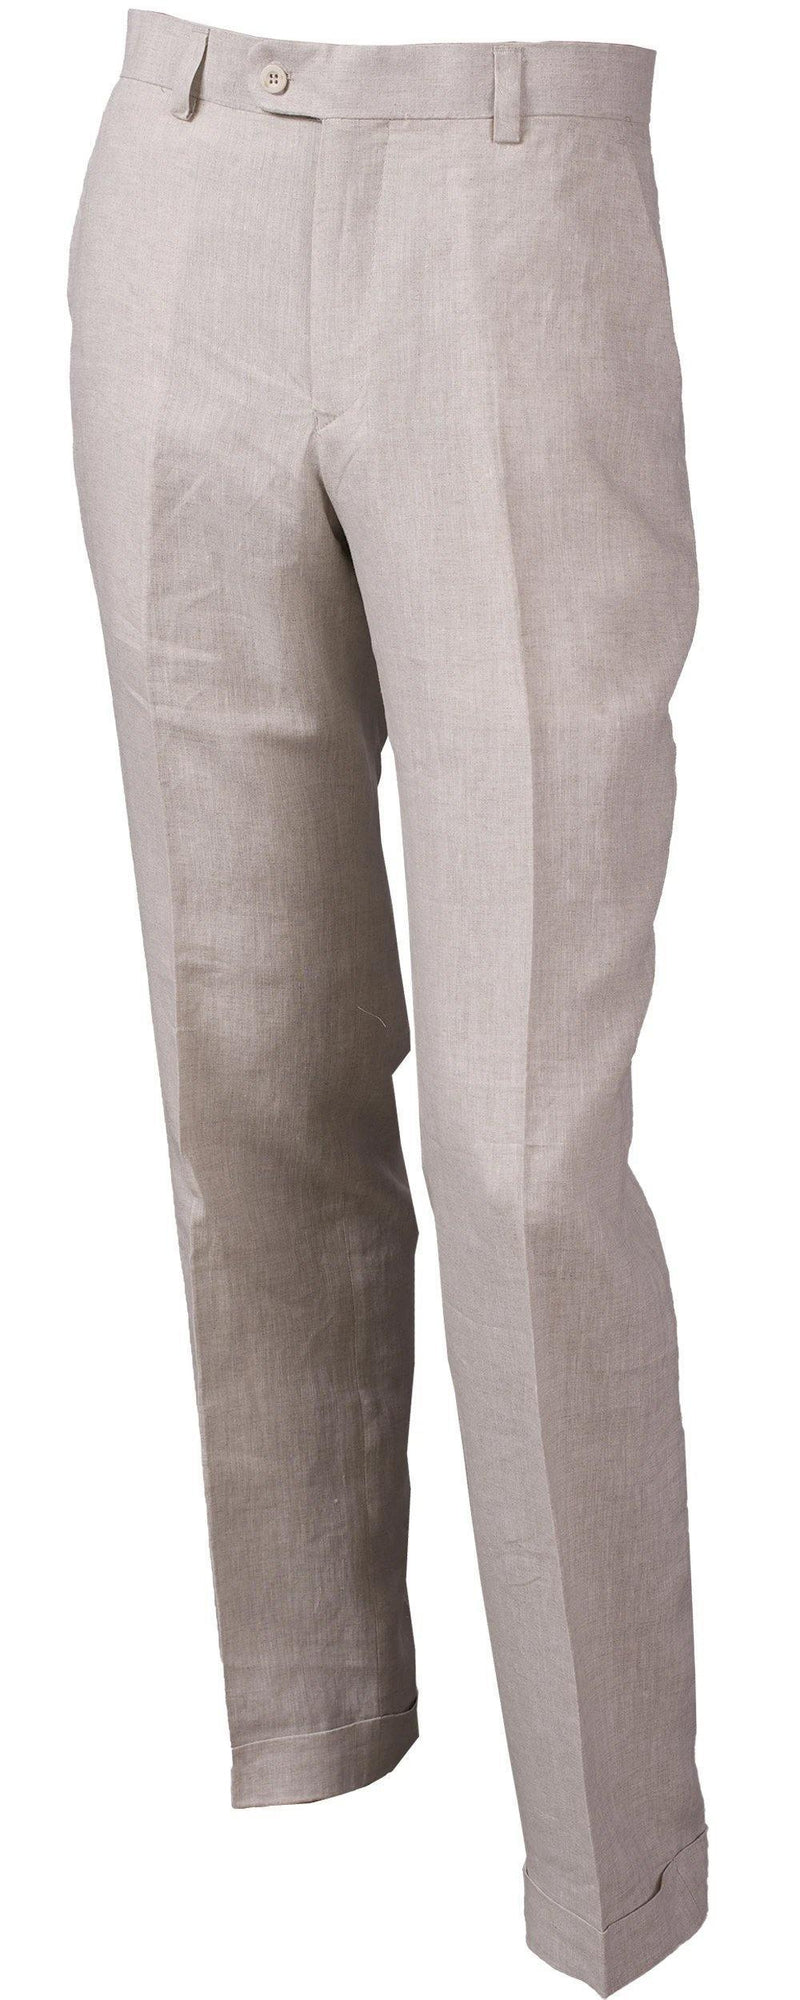 MEN'S LINEN FLAT FRONT PANTS BY INSERCH - Upscale Men's Fashion